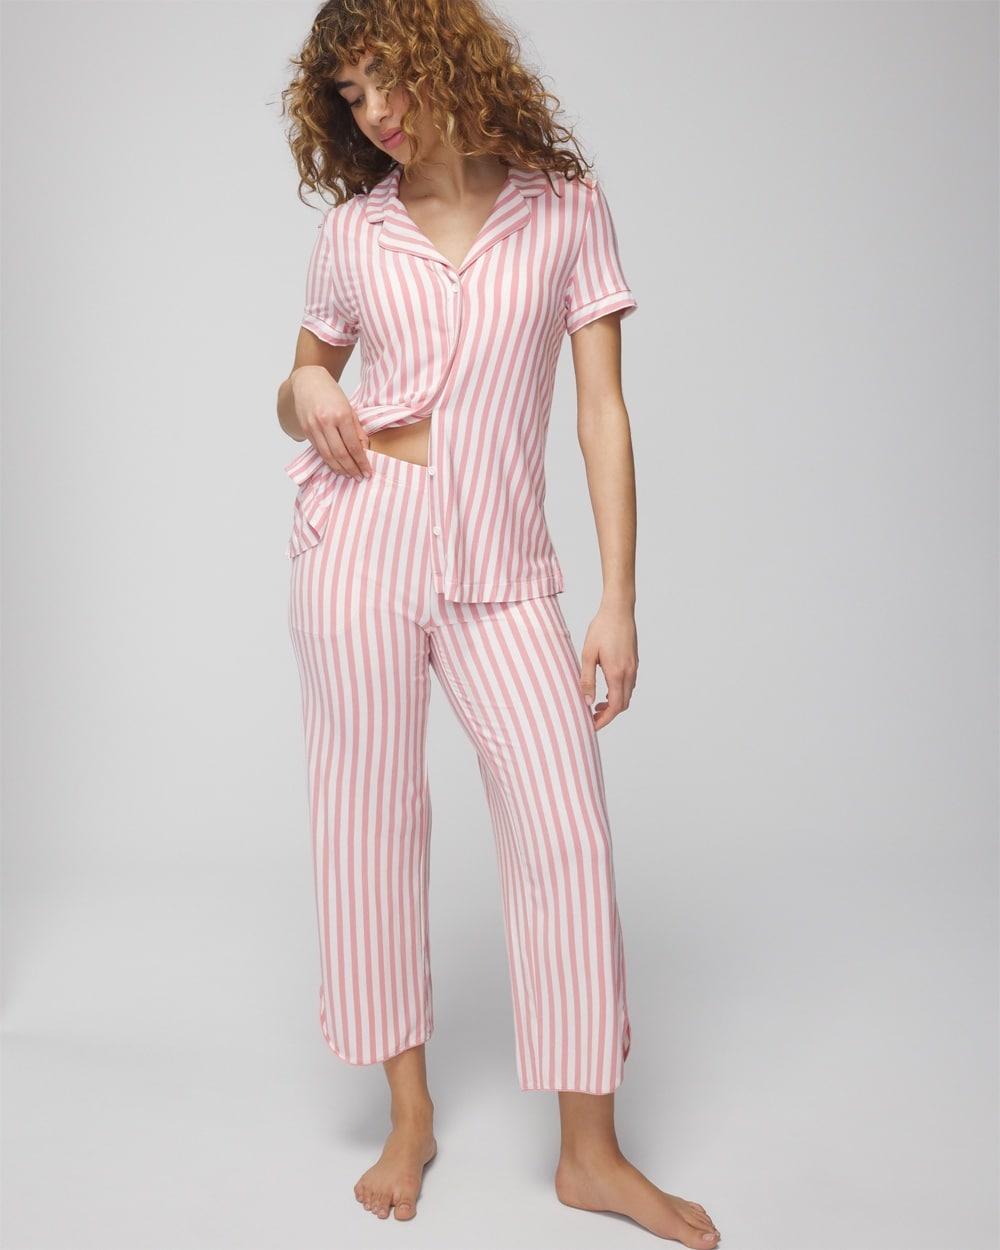 Soma Women's Cool Nights Cropped Pajama Pants In Capri Stripe Blush Pink Size Large |